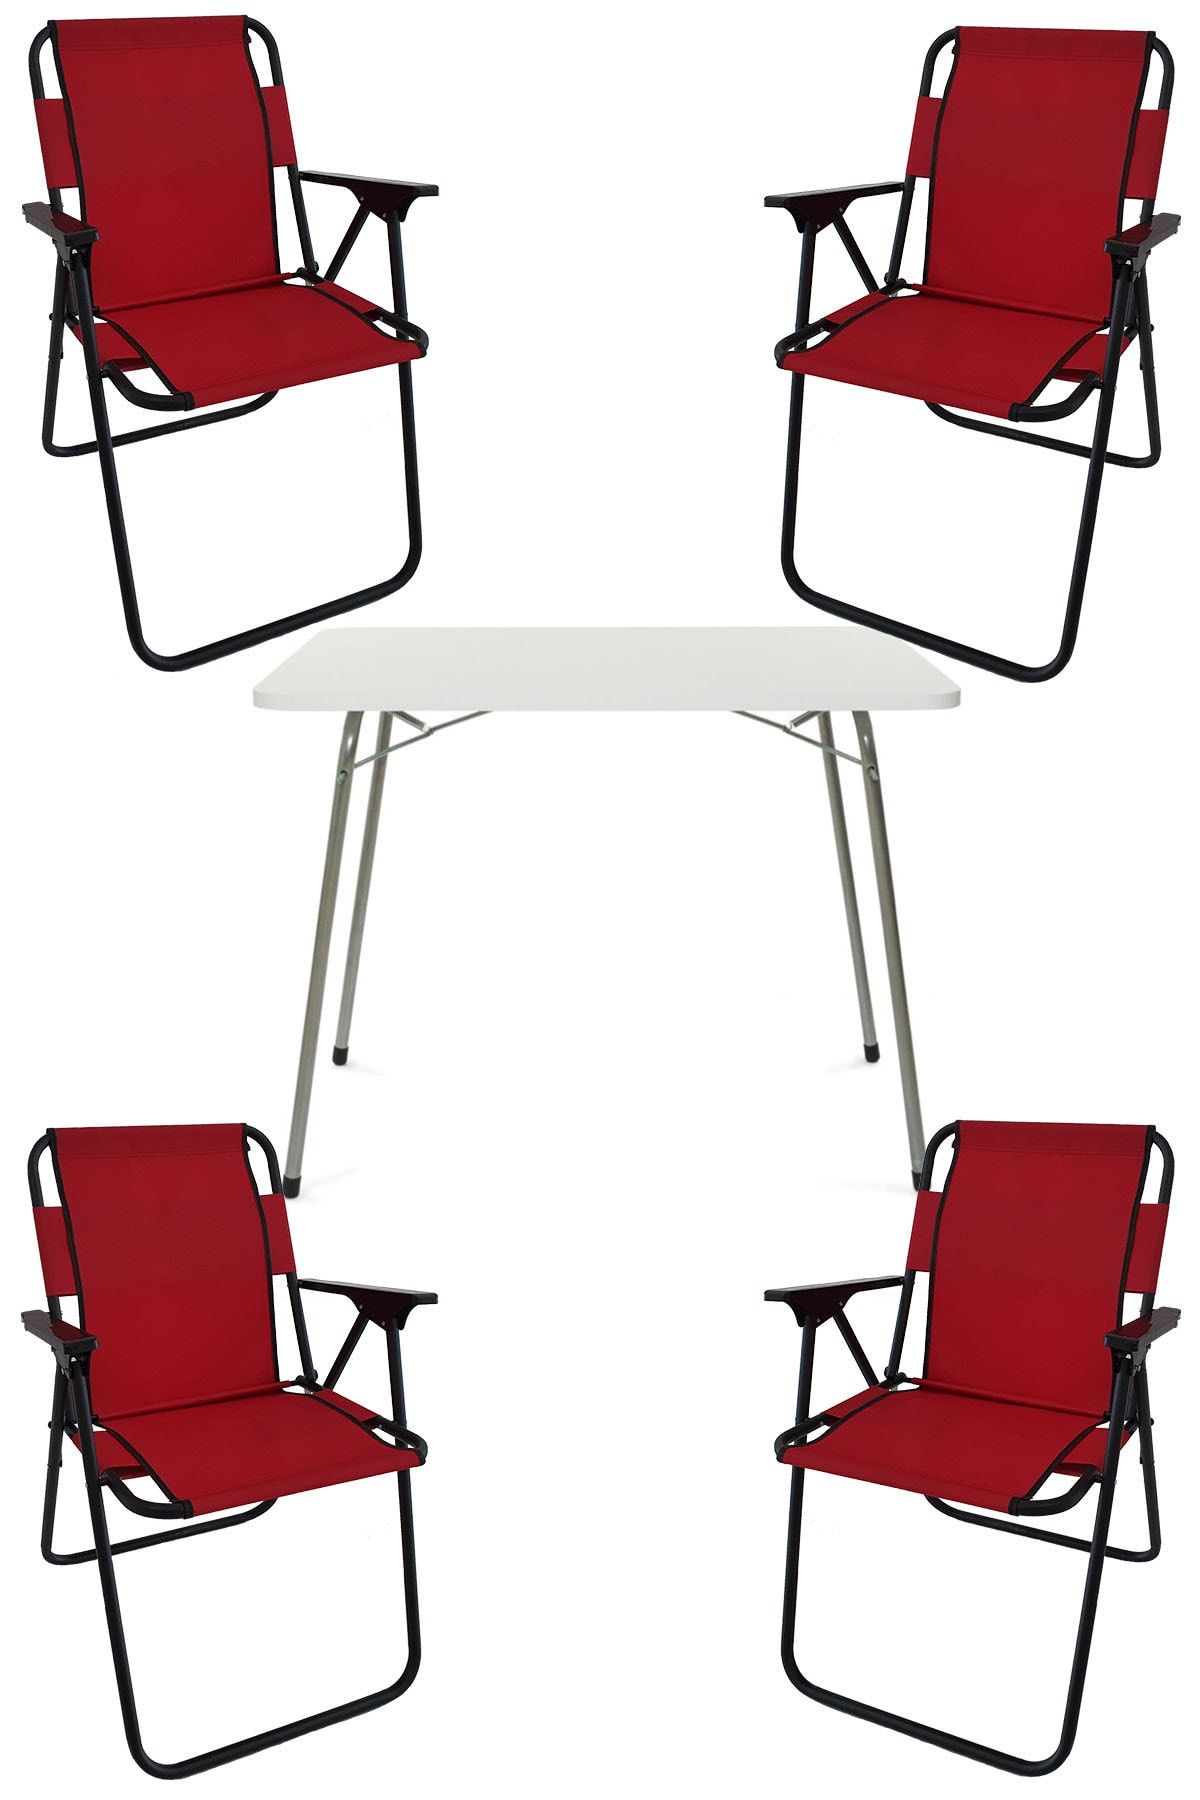 Bofigo 60x80 Beyaz Katlanır Masa + 4 Adet Katlanır Sandalye Kamp Seti Bahçe Takımı Kırmızı